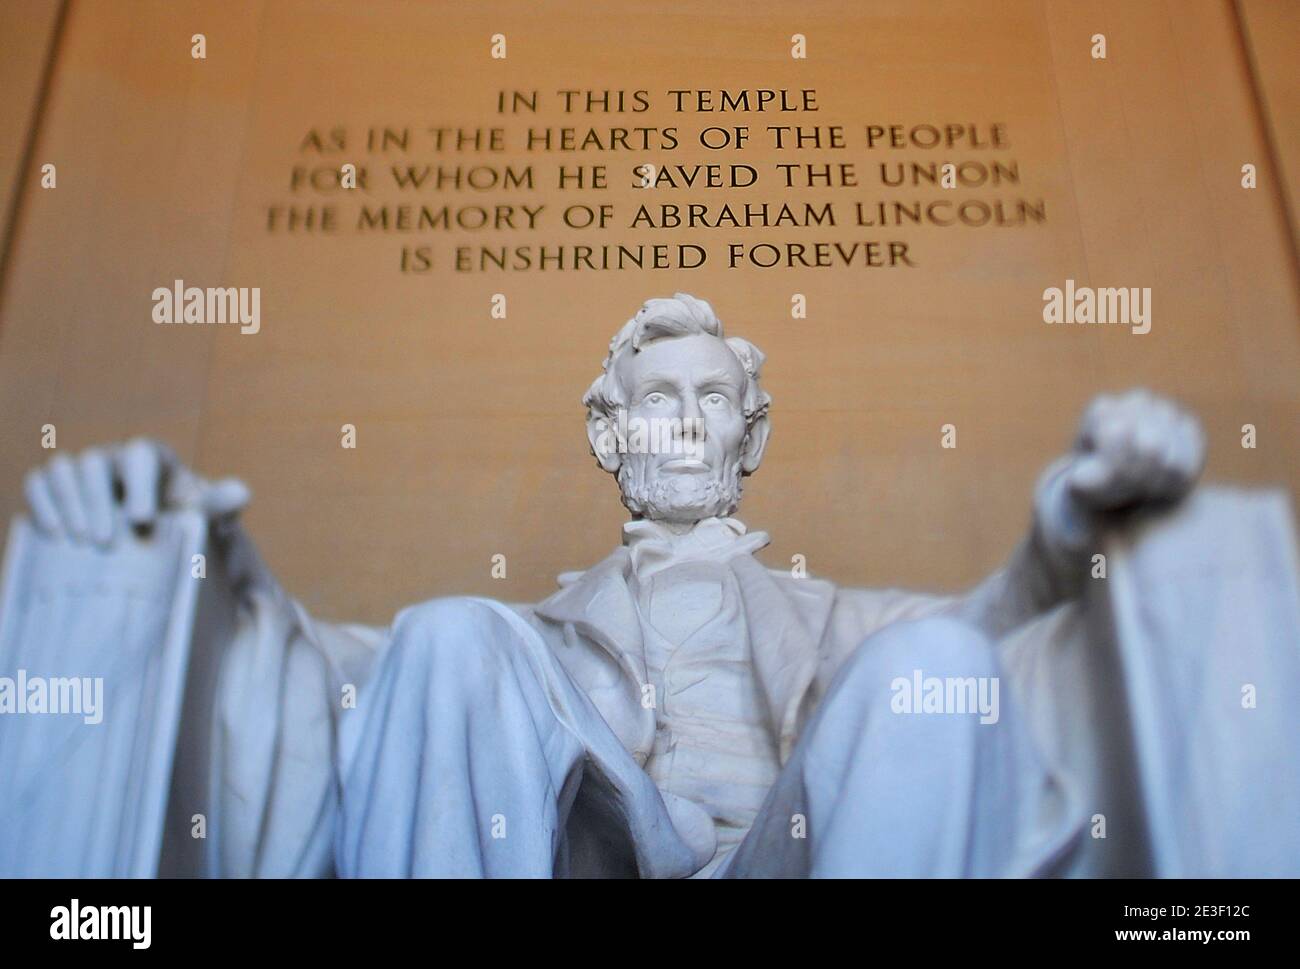 La estatua del 16º Presidente de los EE.UU. Abraham Lincoln se ve en el interior del Lincoln Memorial el 12 de febrero de 2009 en Washington, DC. La Comisión Bicentenario de Abraham Lincoln organizó ceremonias en honor al 200 aniversario del nacimiento de Lincoln. Foto de Olivier Douliery/ABACAPRESS.COM Foto de stock